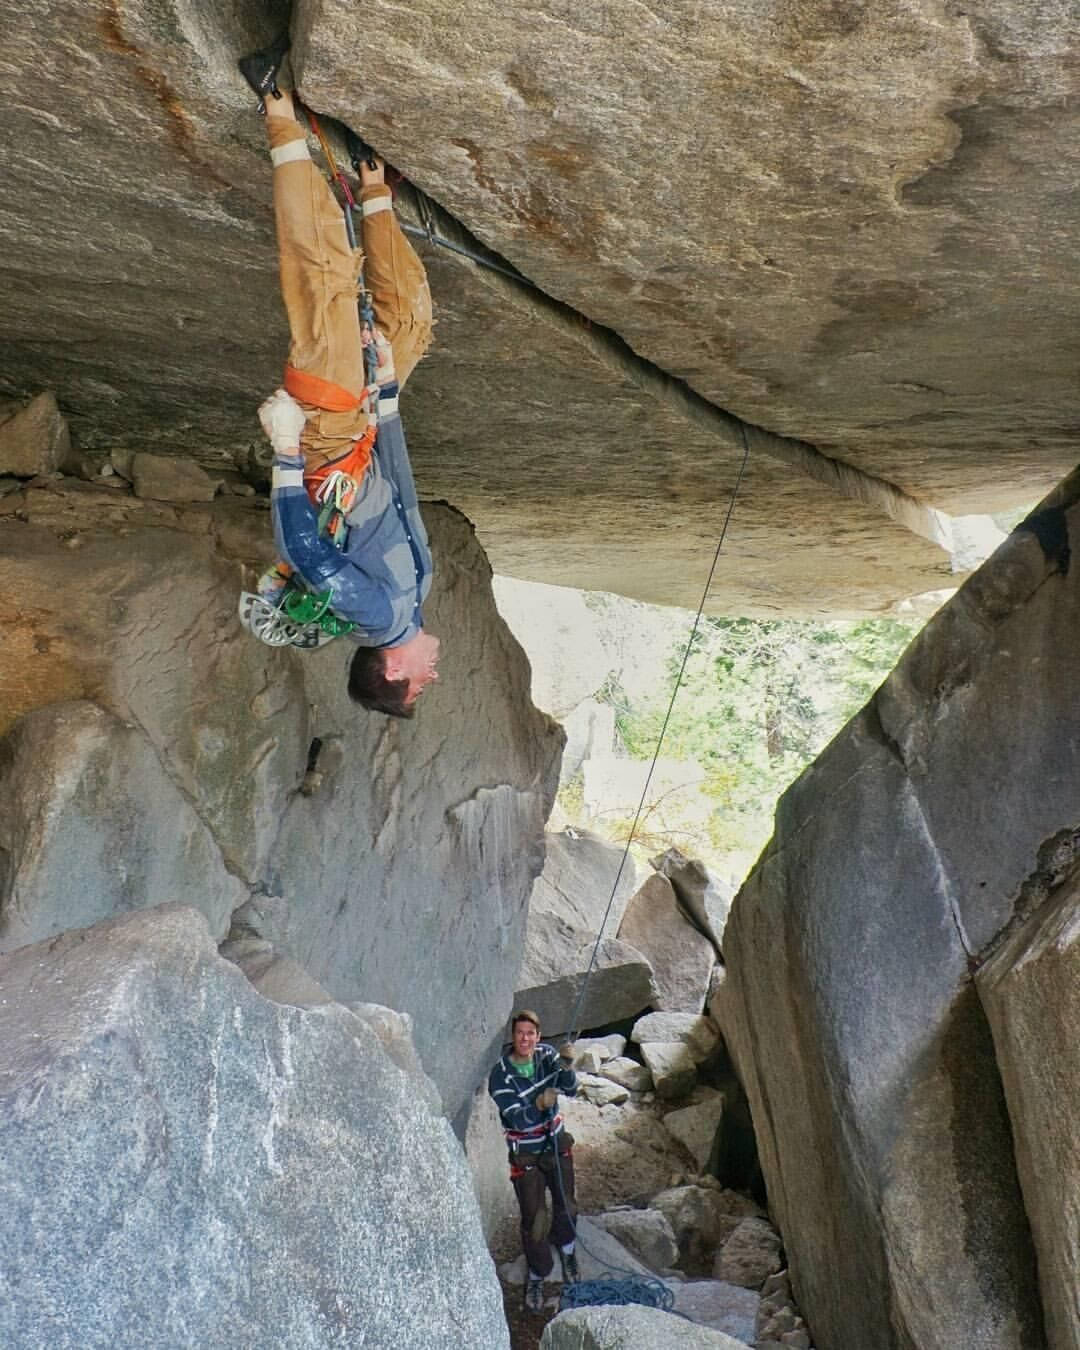 Upside Down Sport Climbing: Skab et dynamisk miljø af glæde og eventyr Wallpaper